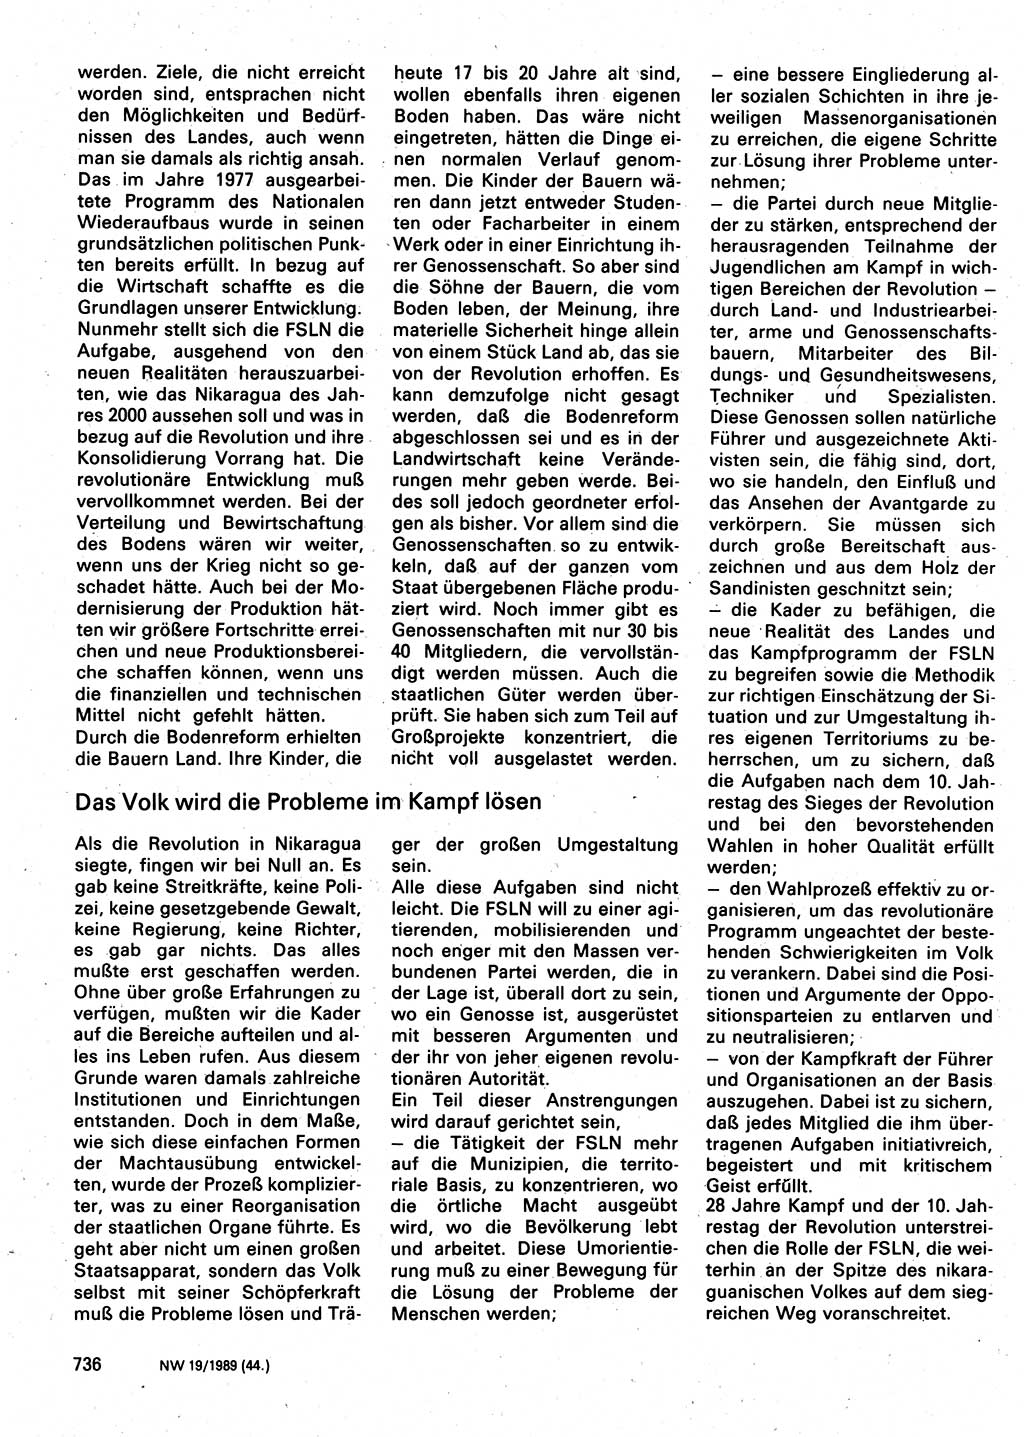 Neuer Weg (NW), Organ des Zentralkomitees (ZK) der SED (Sozialistische Einheitspartei Deutschlands) für Fragen des Parteilebens, 44. Jahrgang [Deutsche Demokratische Republik (DDR)] 1989, Seite 736 (NW ZK SED DDR 1989, S. 736)